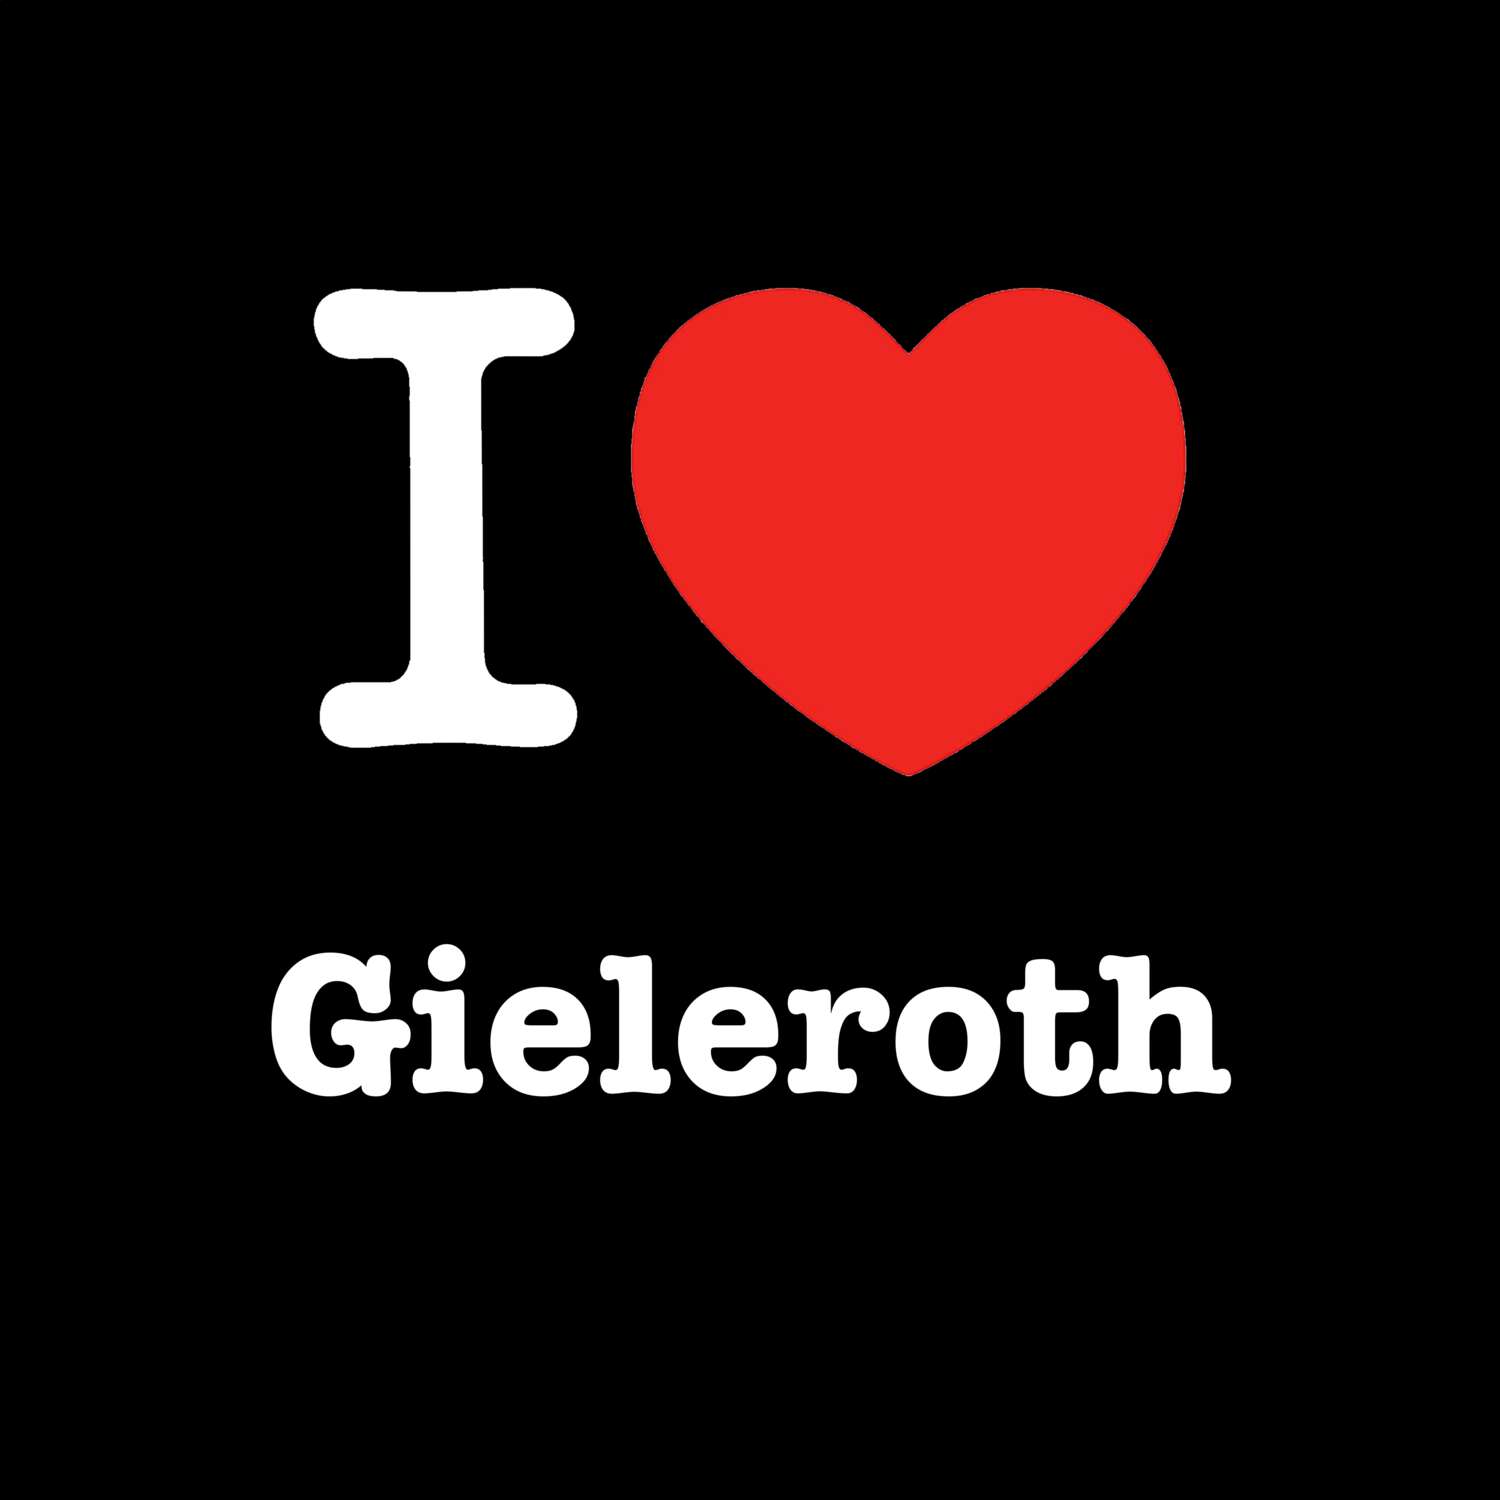 Gieleroth T-Shirt »I love«